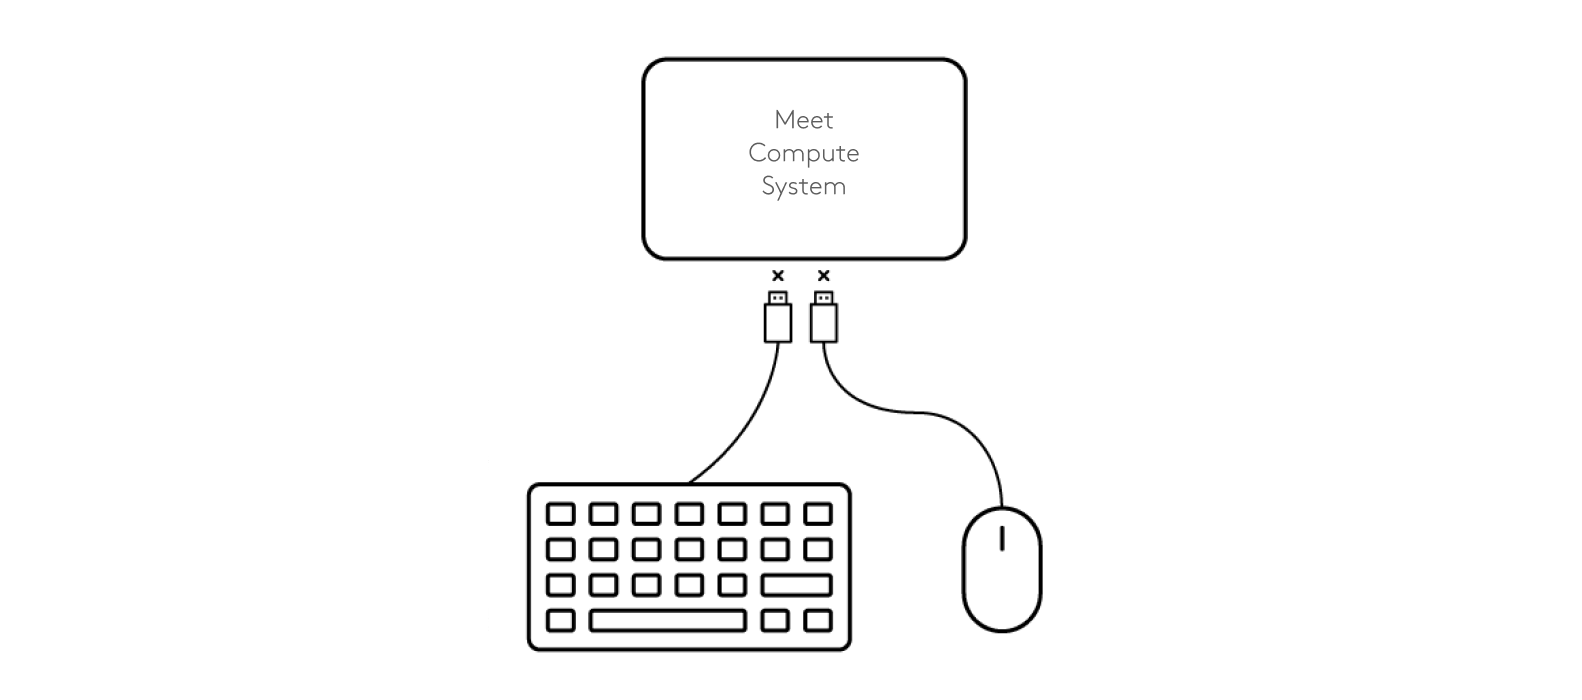 Diagrama de desconexión de teclado y mouse de Meet Compute System